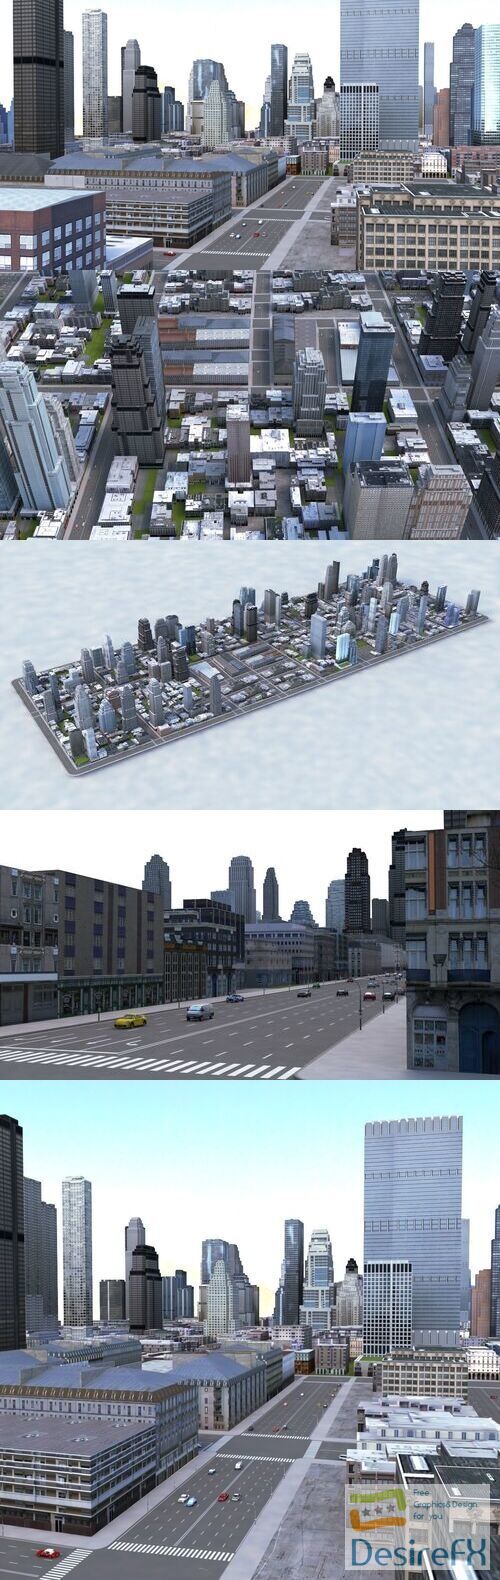 City Block 3D Model